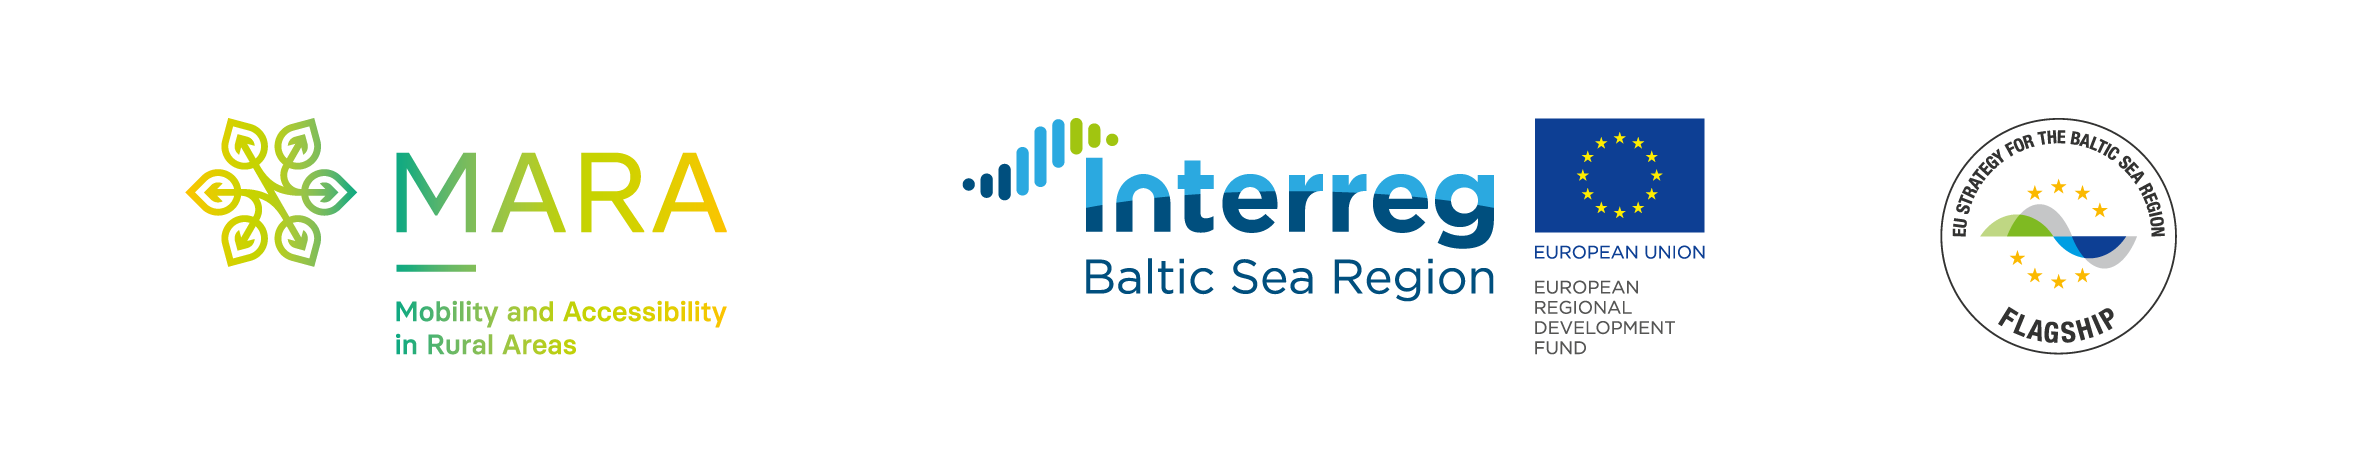 logotypy projektu MARA - ikony z nazwą projektu MARA, Programu Interreg Baltic Sea Region